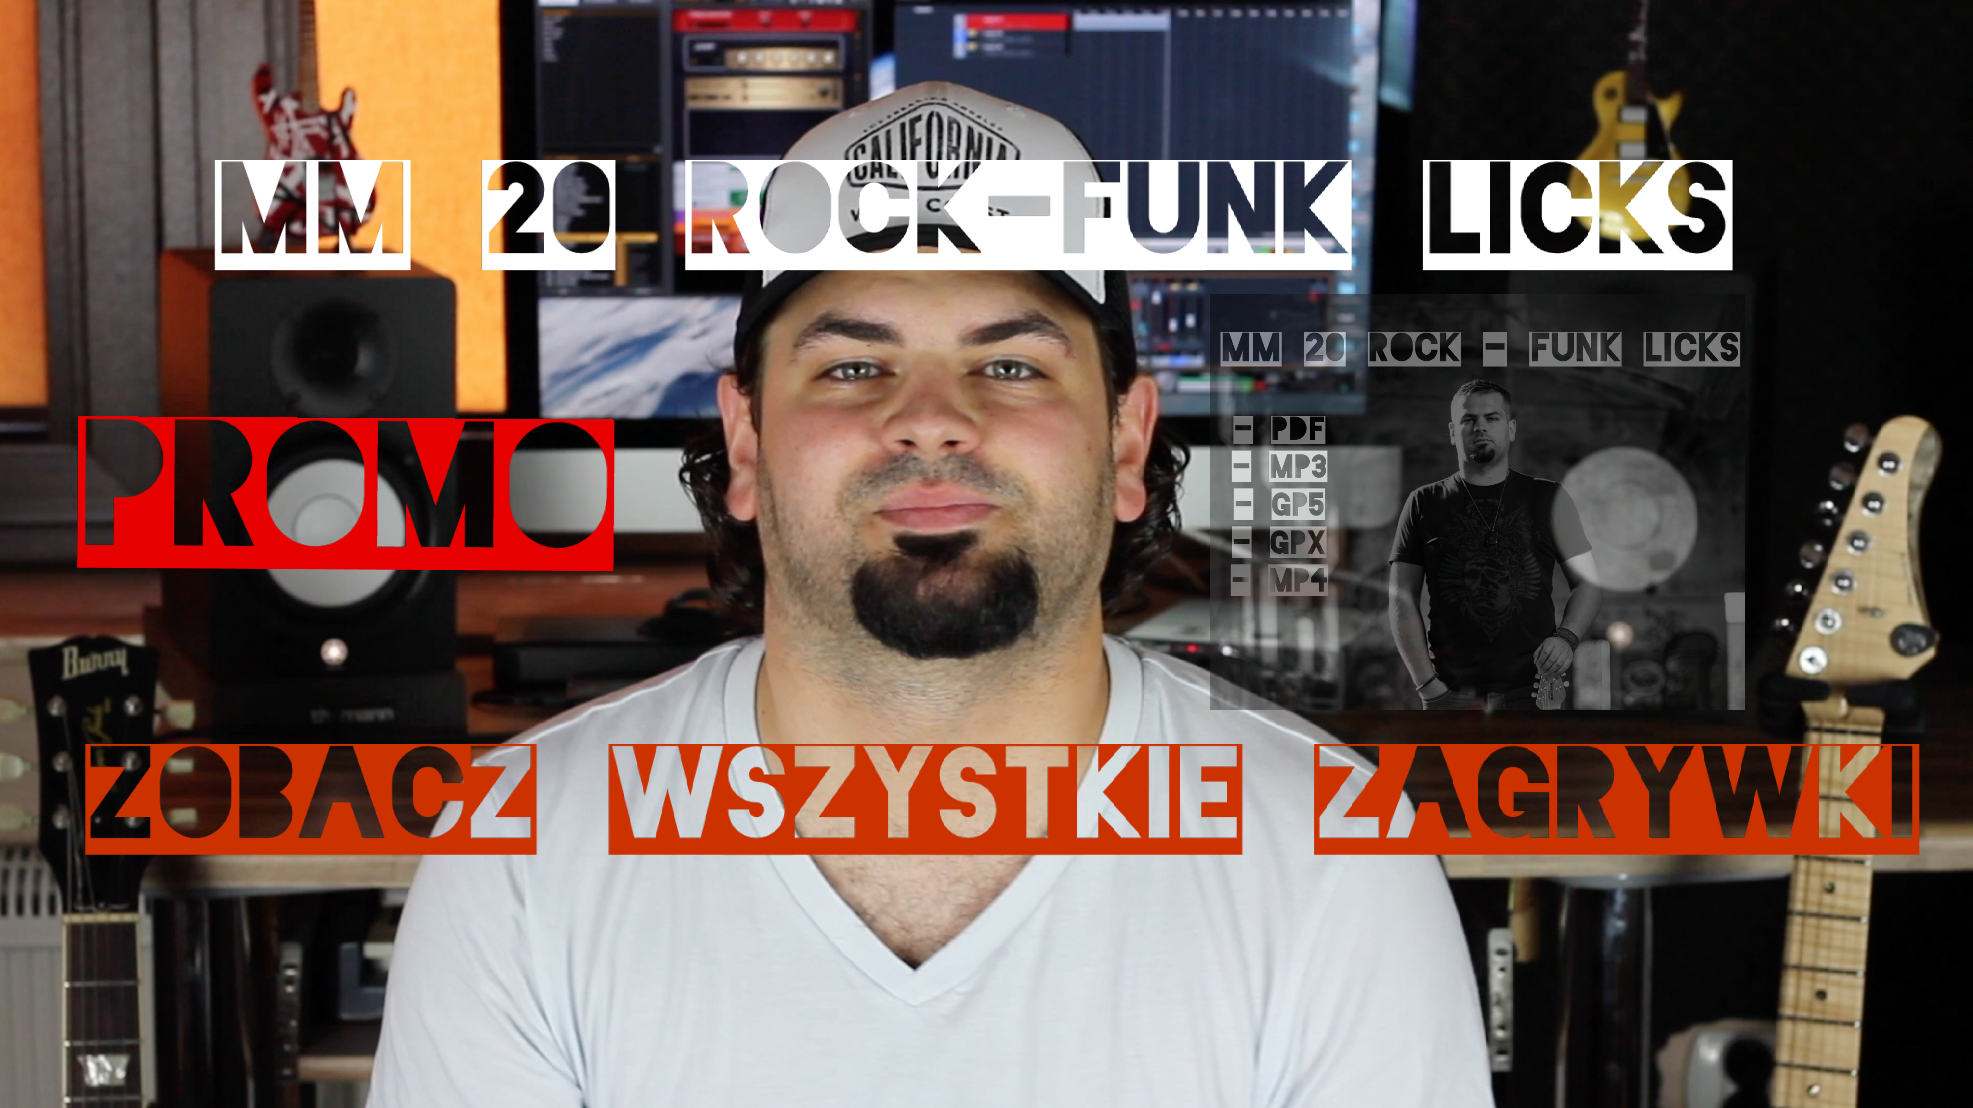 MM 20 Rock-Funk Licks, PROMO, Zobacz WSZYSTKIE ZAGRYWKI!!!